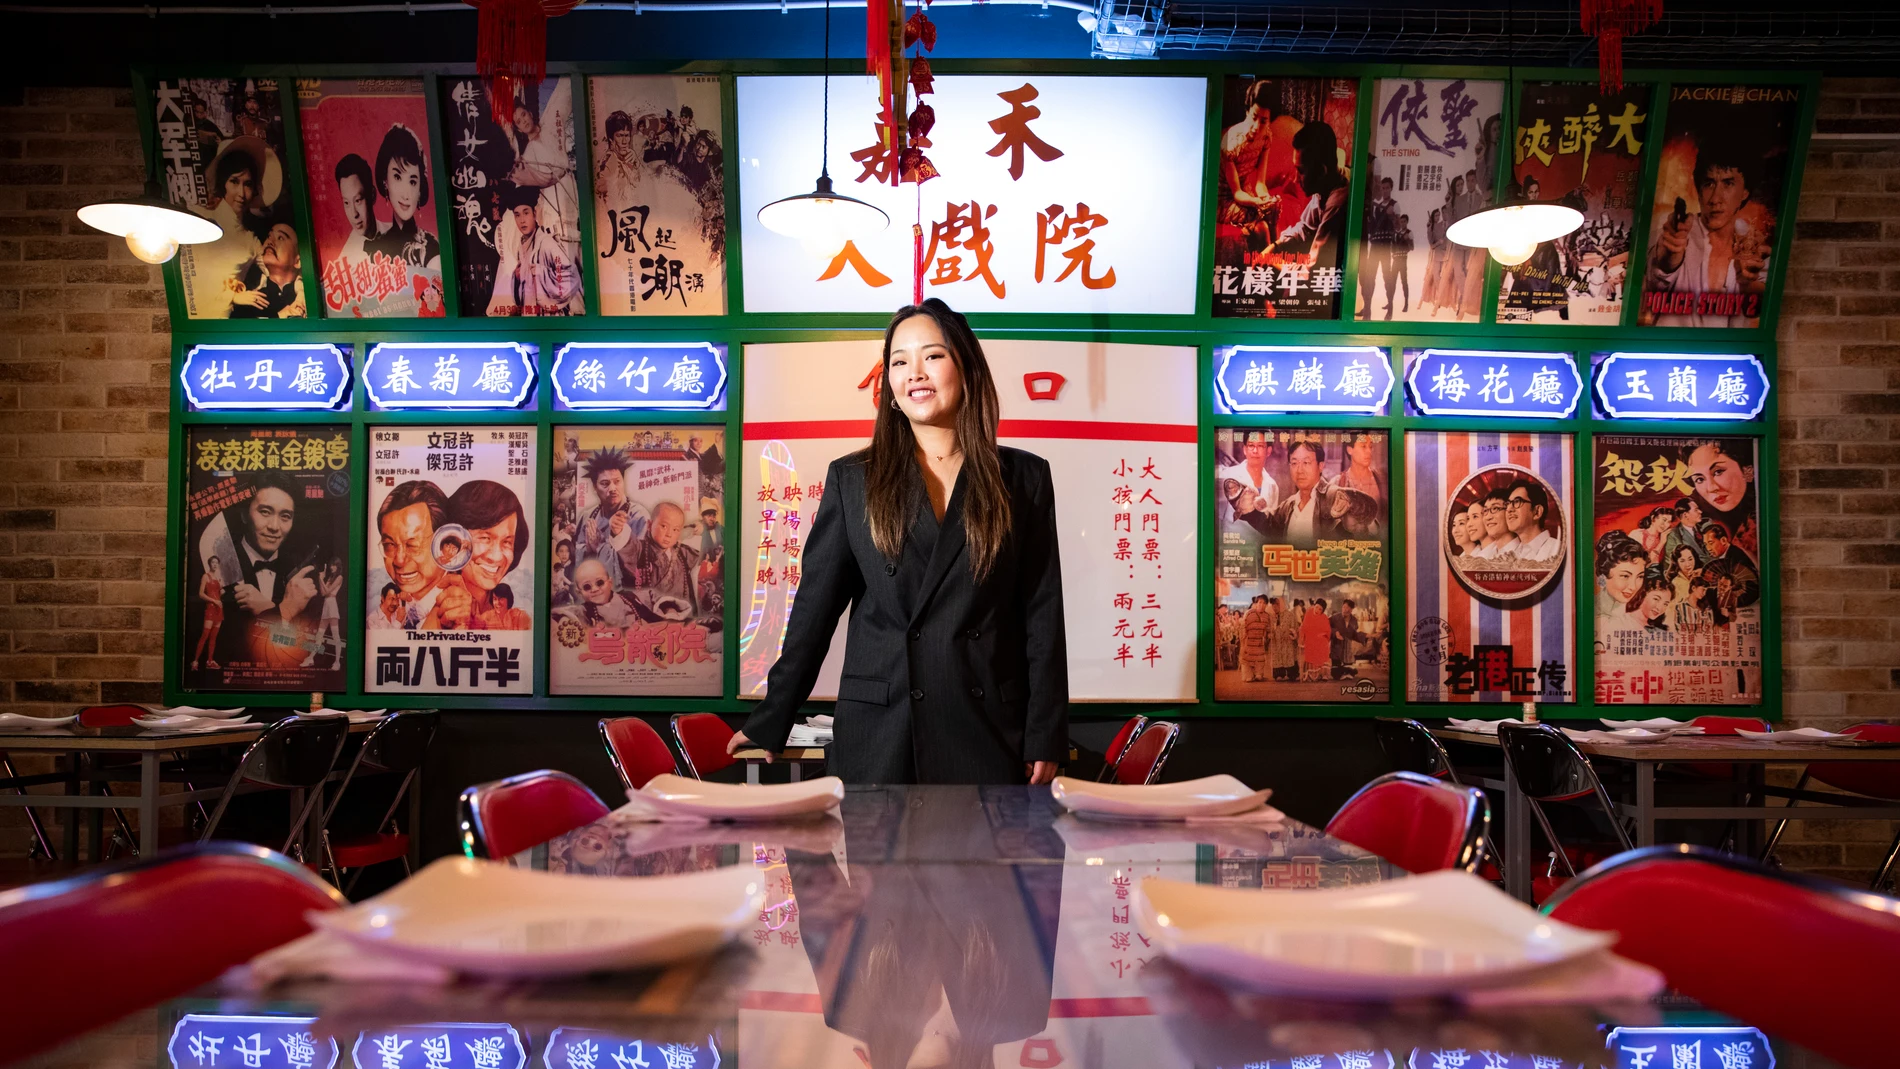 Entrevista a Paola Fang en su restaurante, Hong Kong 70 de Usar, para hablar de su comida y el nuevo año chino del conejo.